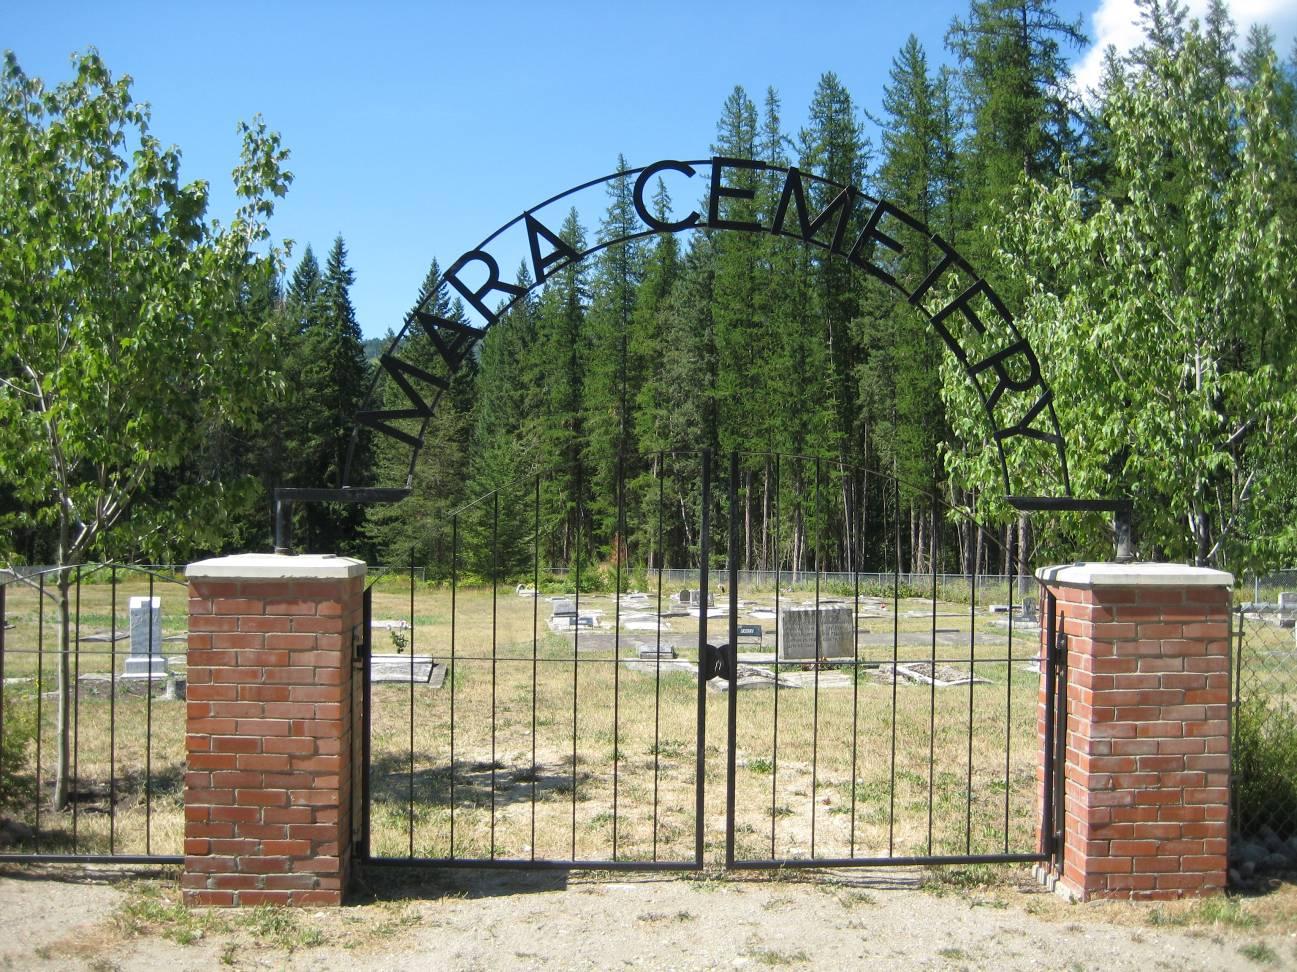 Entrance to Mara Cemetery